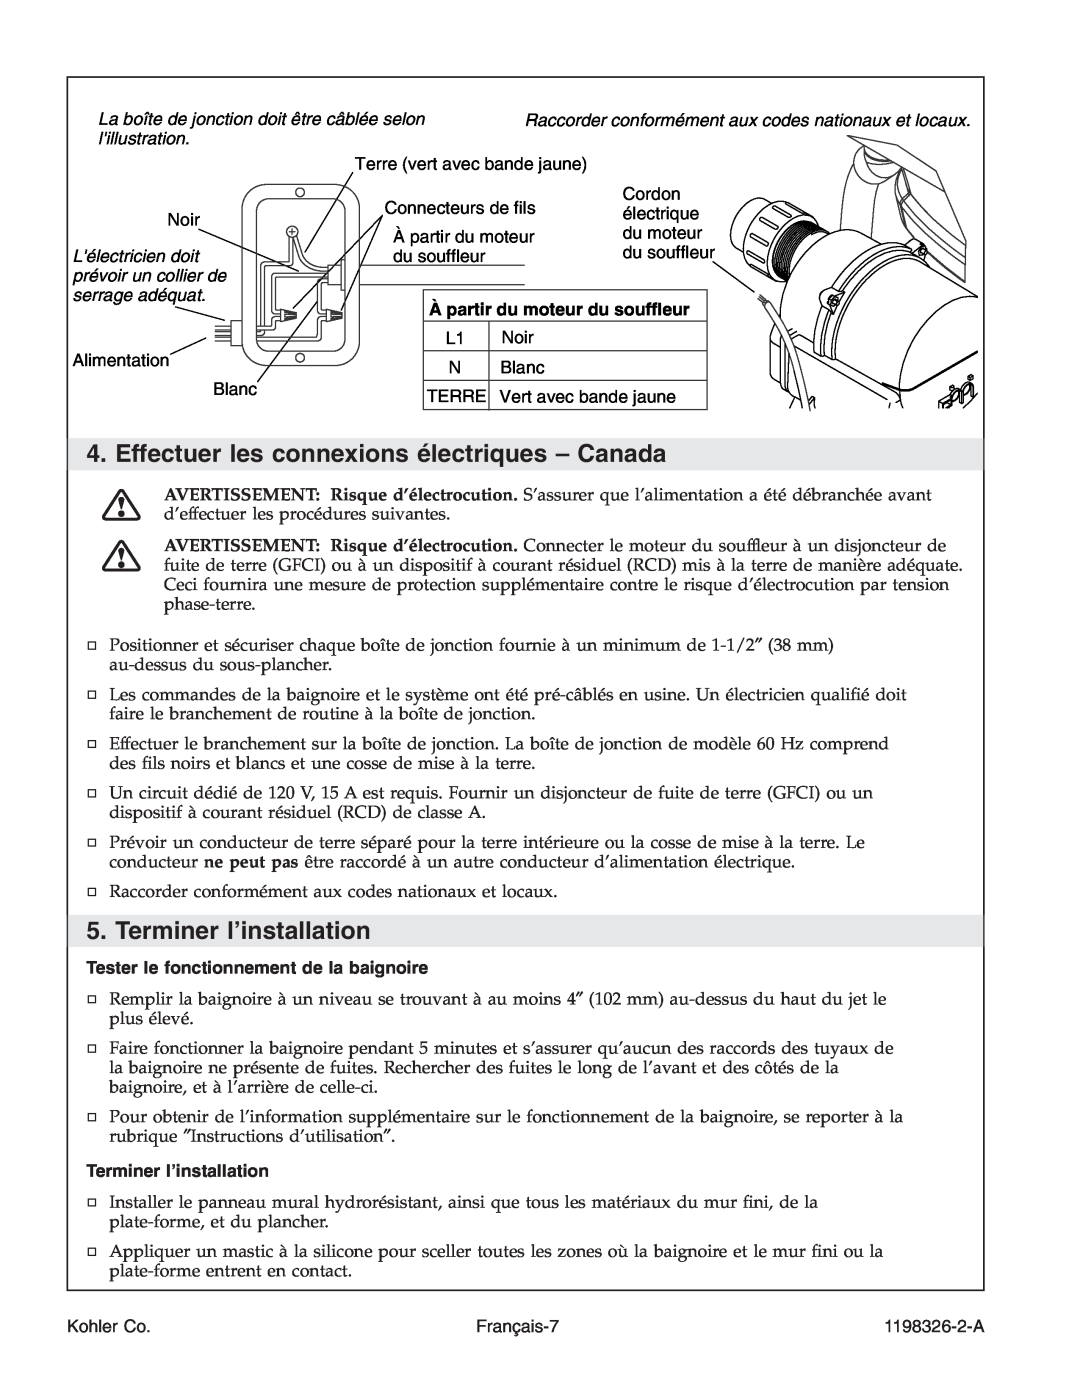 Kohler 1198326-2-A Effectuer les connexions électriques - Canada, Terminer l’installation, À partir du moteur du souffleur 